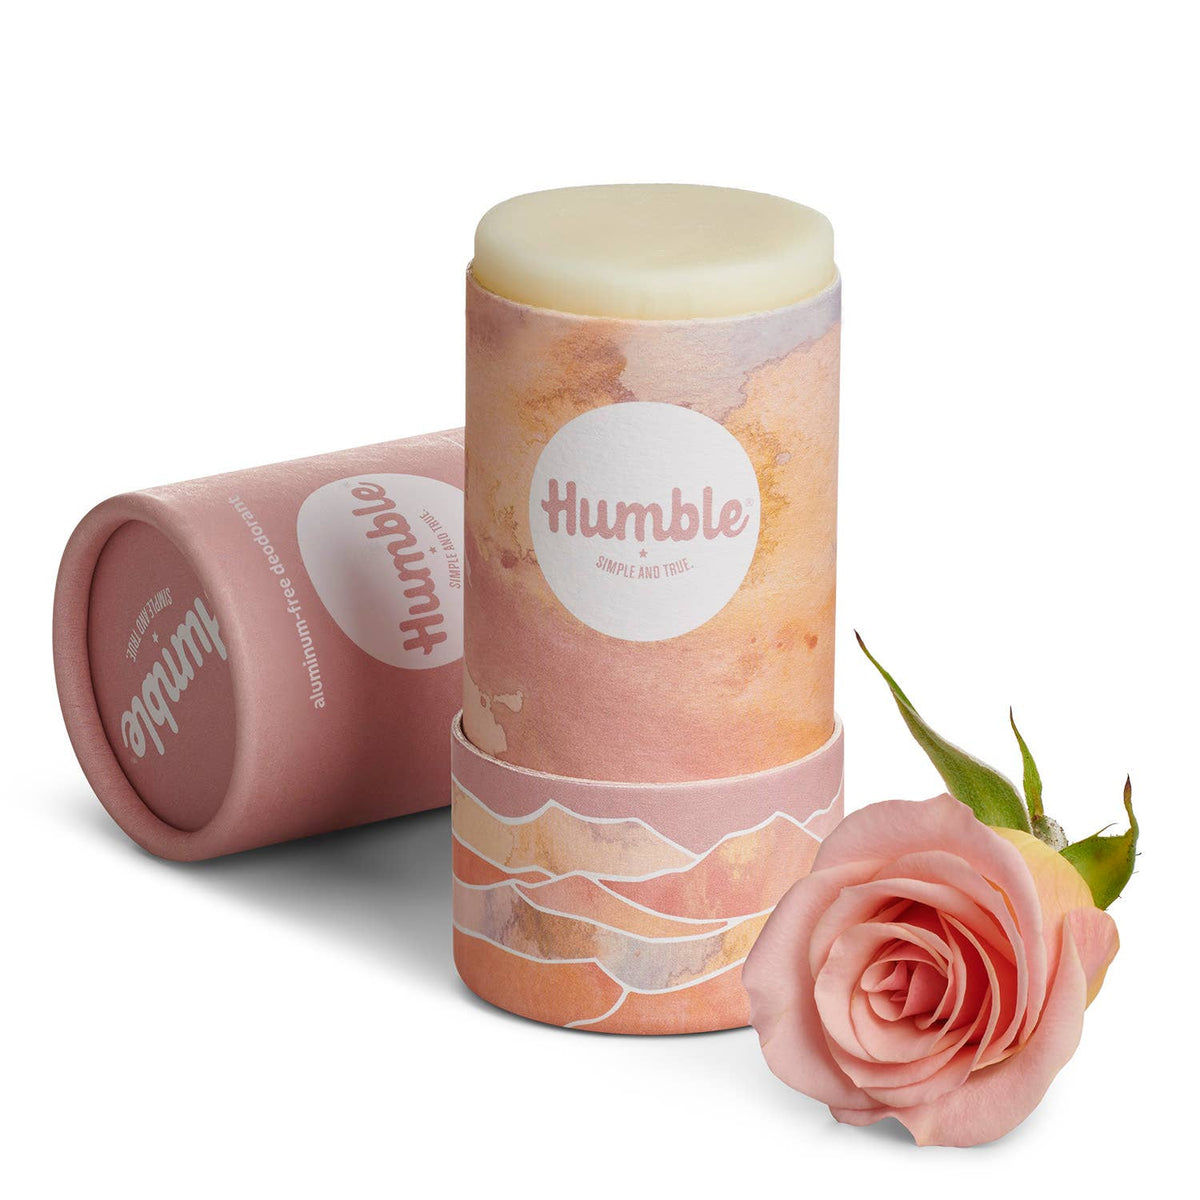 Moroccan Rose Deodorant - Natural, Plastic Free